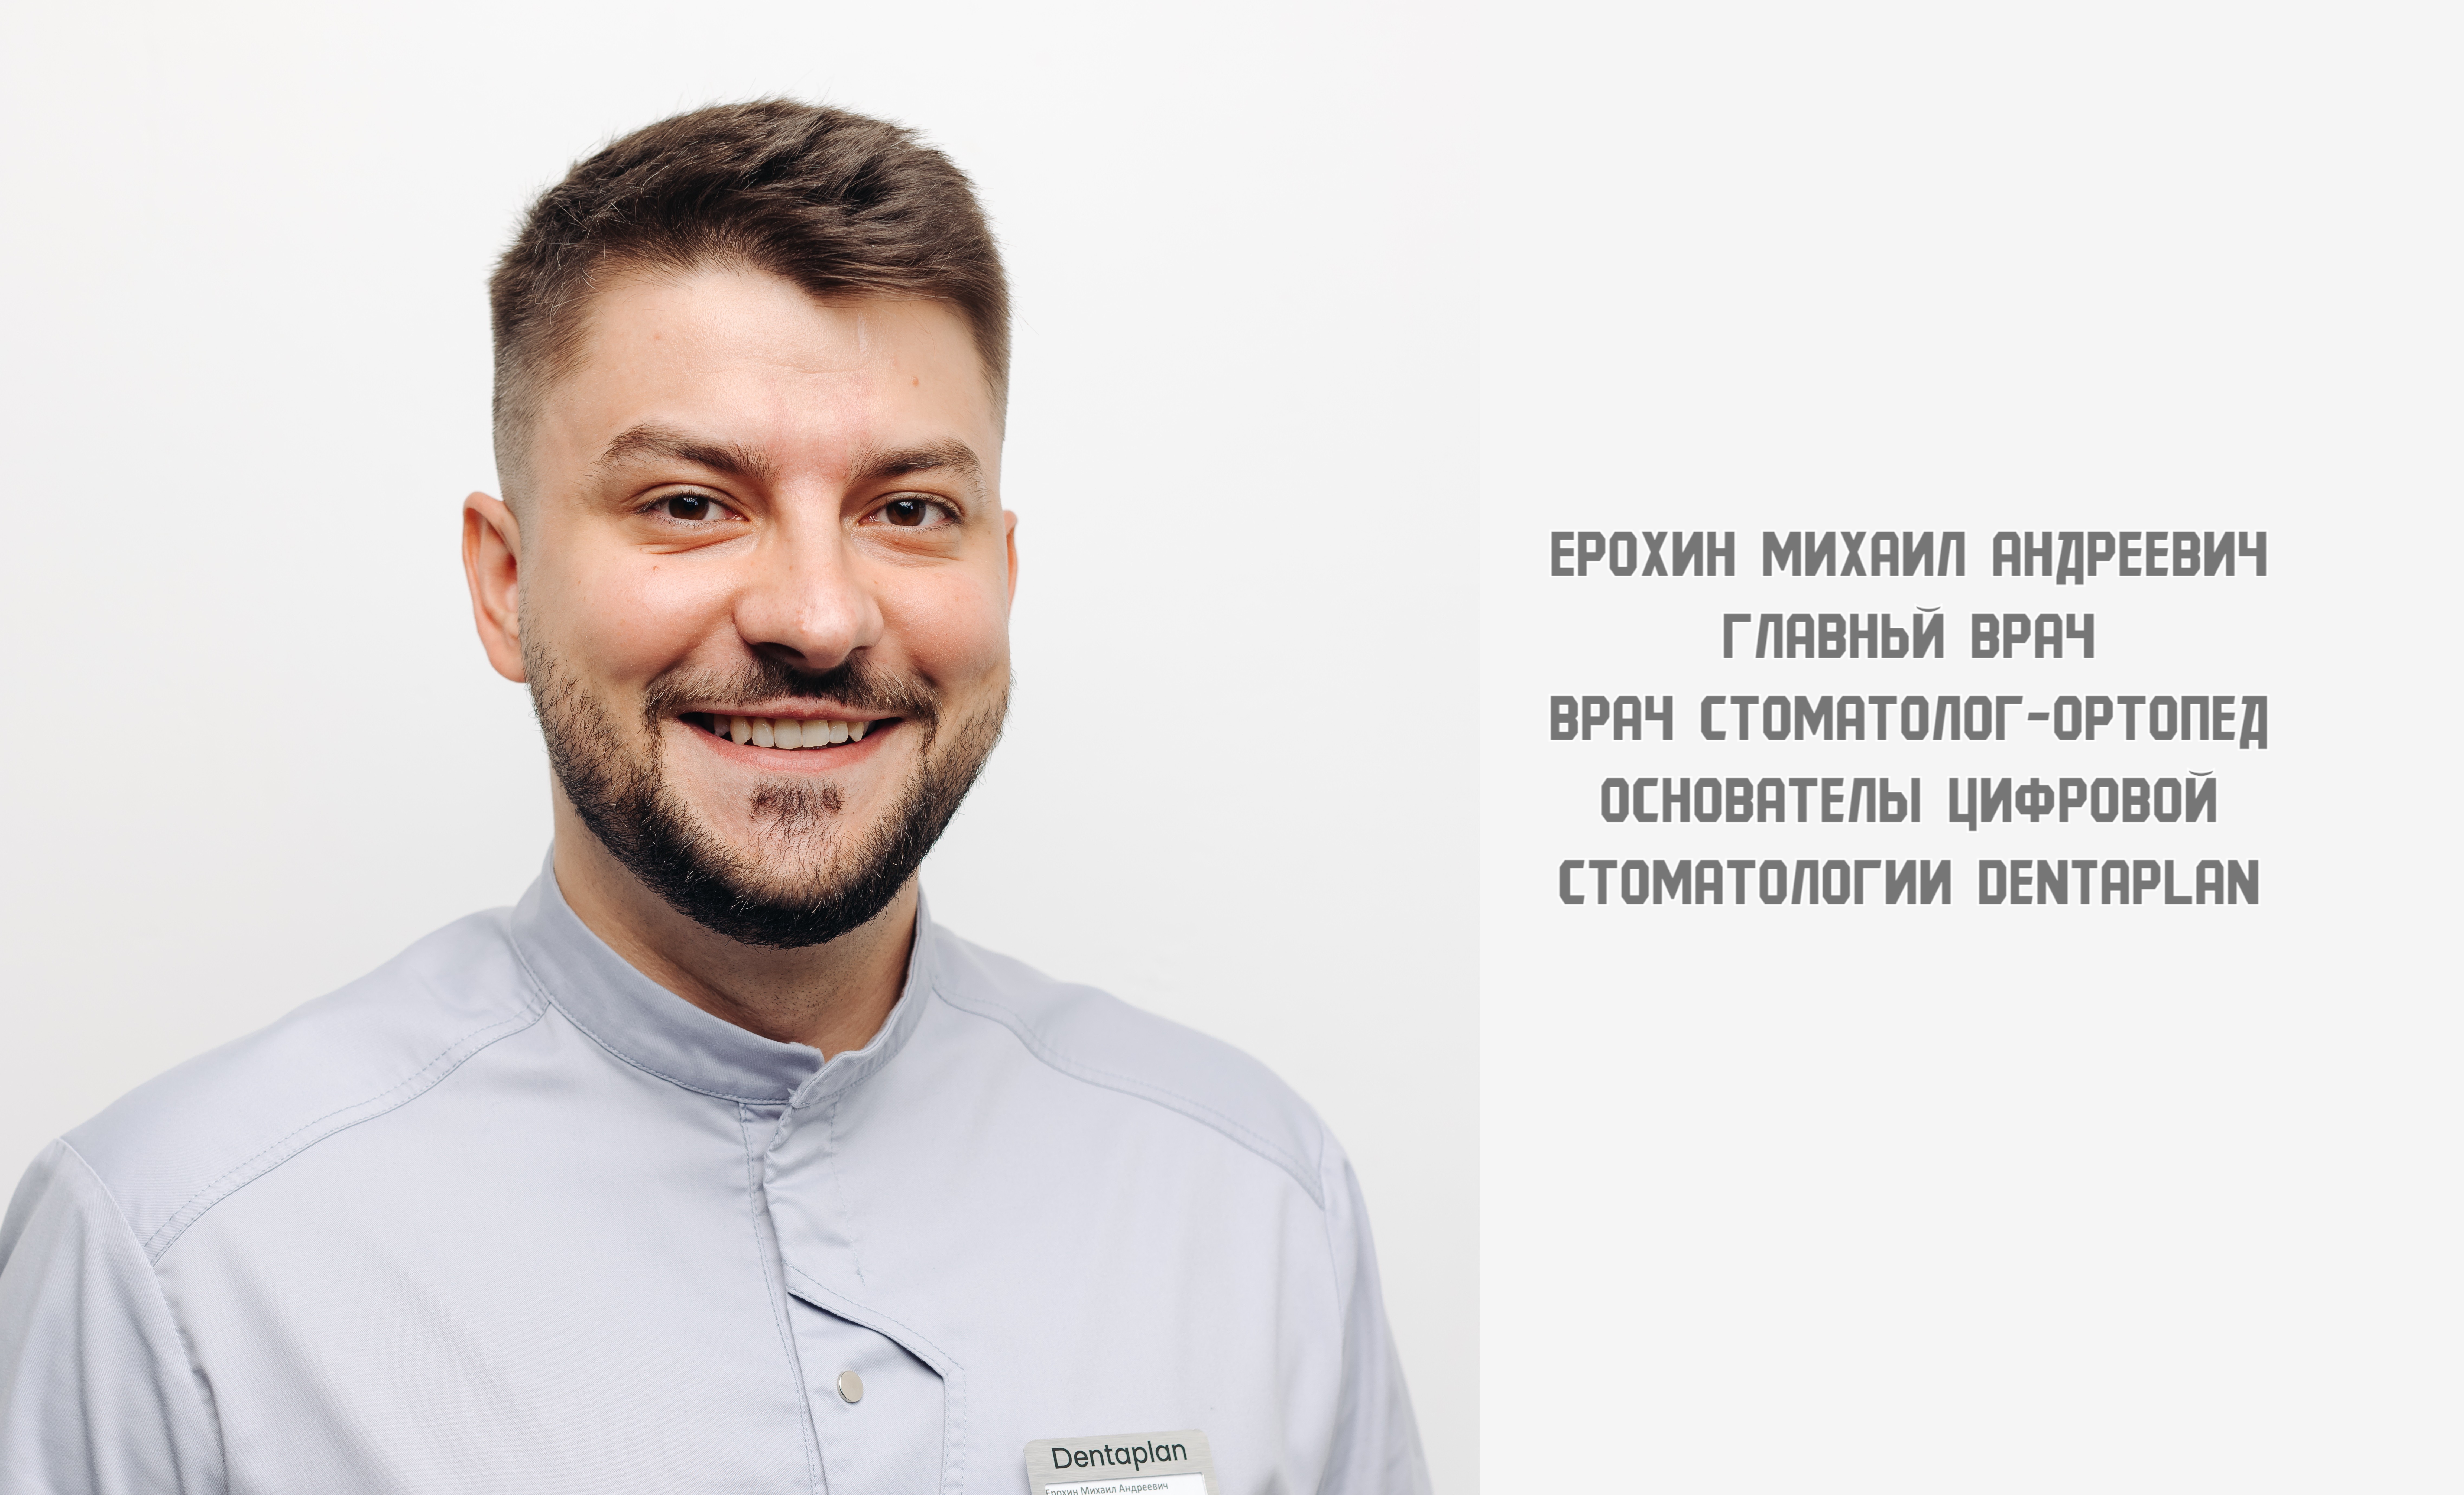 Ерохин Михаил Андреевич врач стоматолог ортопед, главный врач, основатель цифровой стоматологии СПб